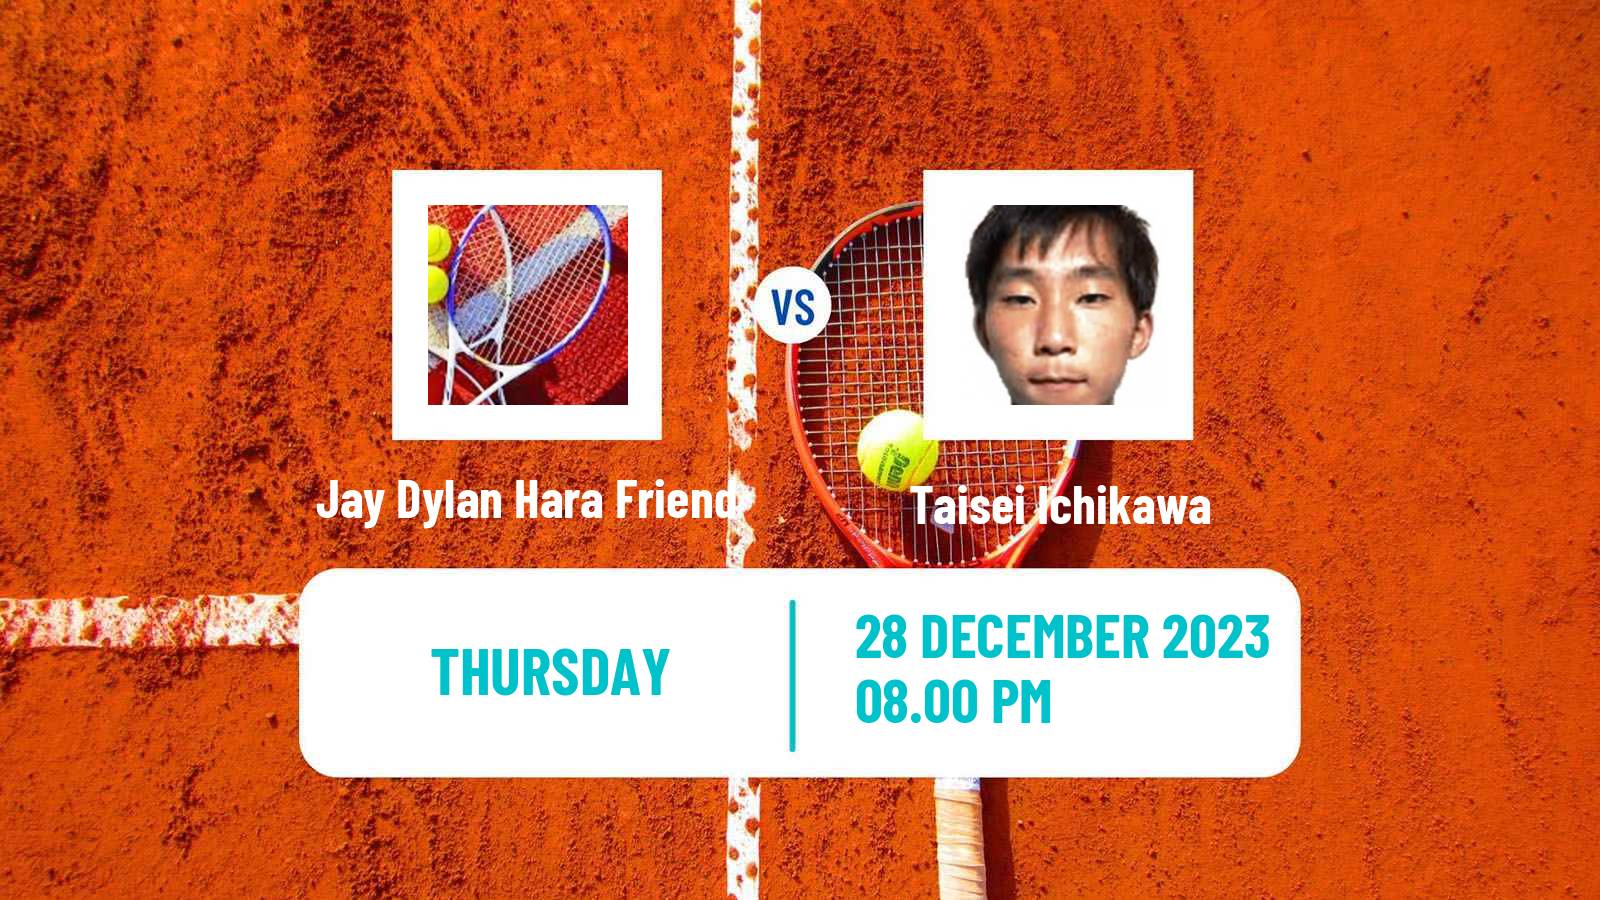 Tennis ITF M15 Yanagawa 2 Men Jay Dylan Hara Friend - Taisei Ichikawa